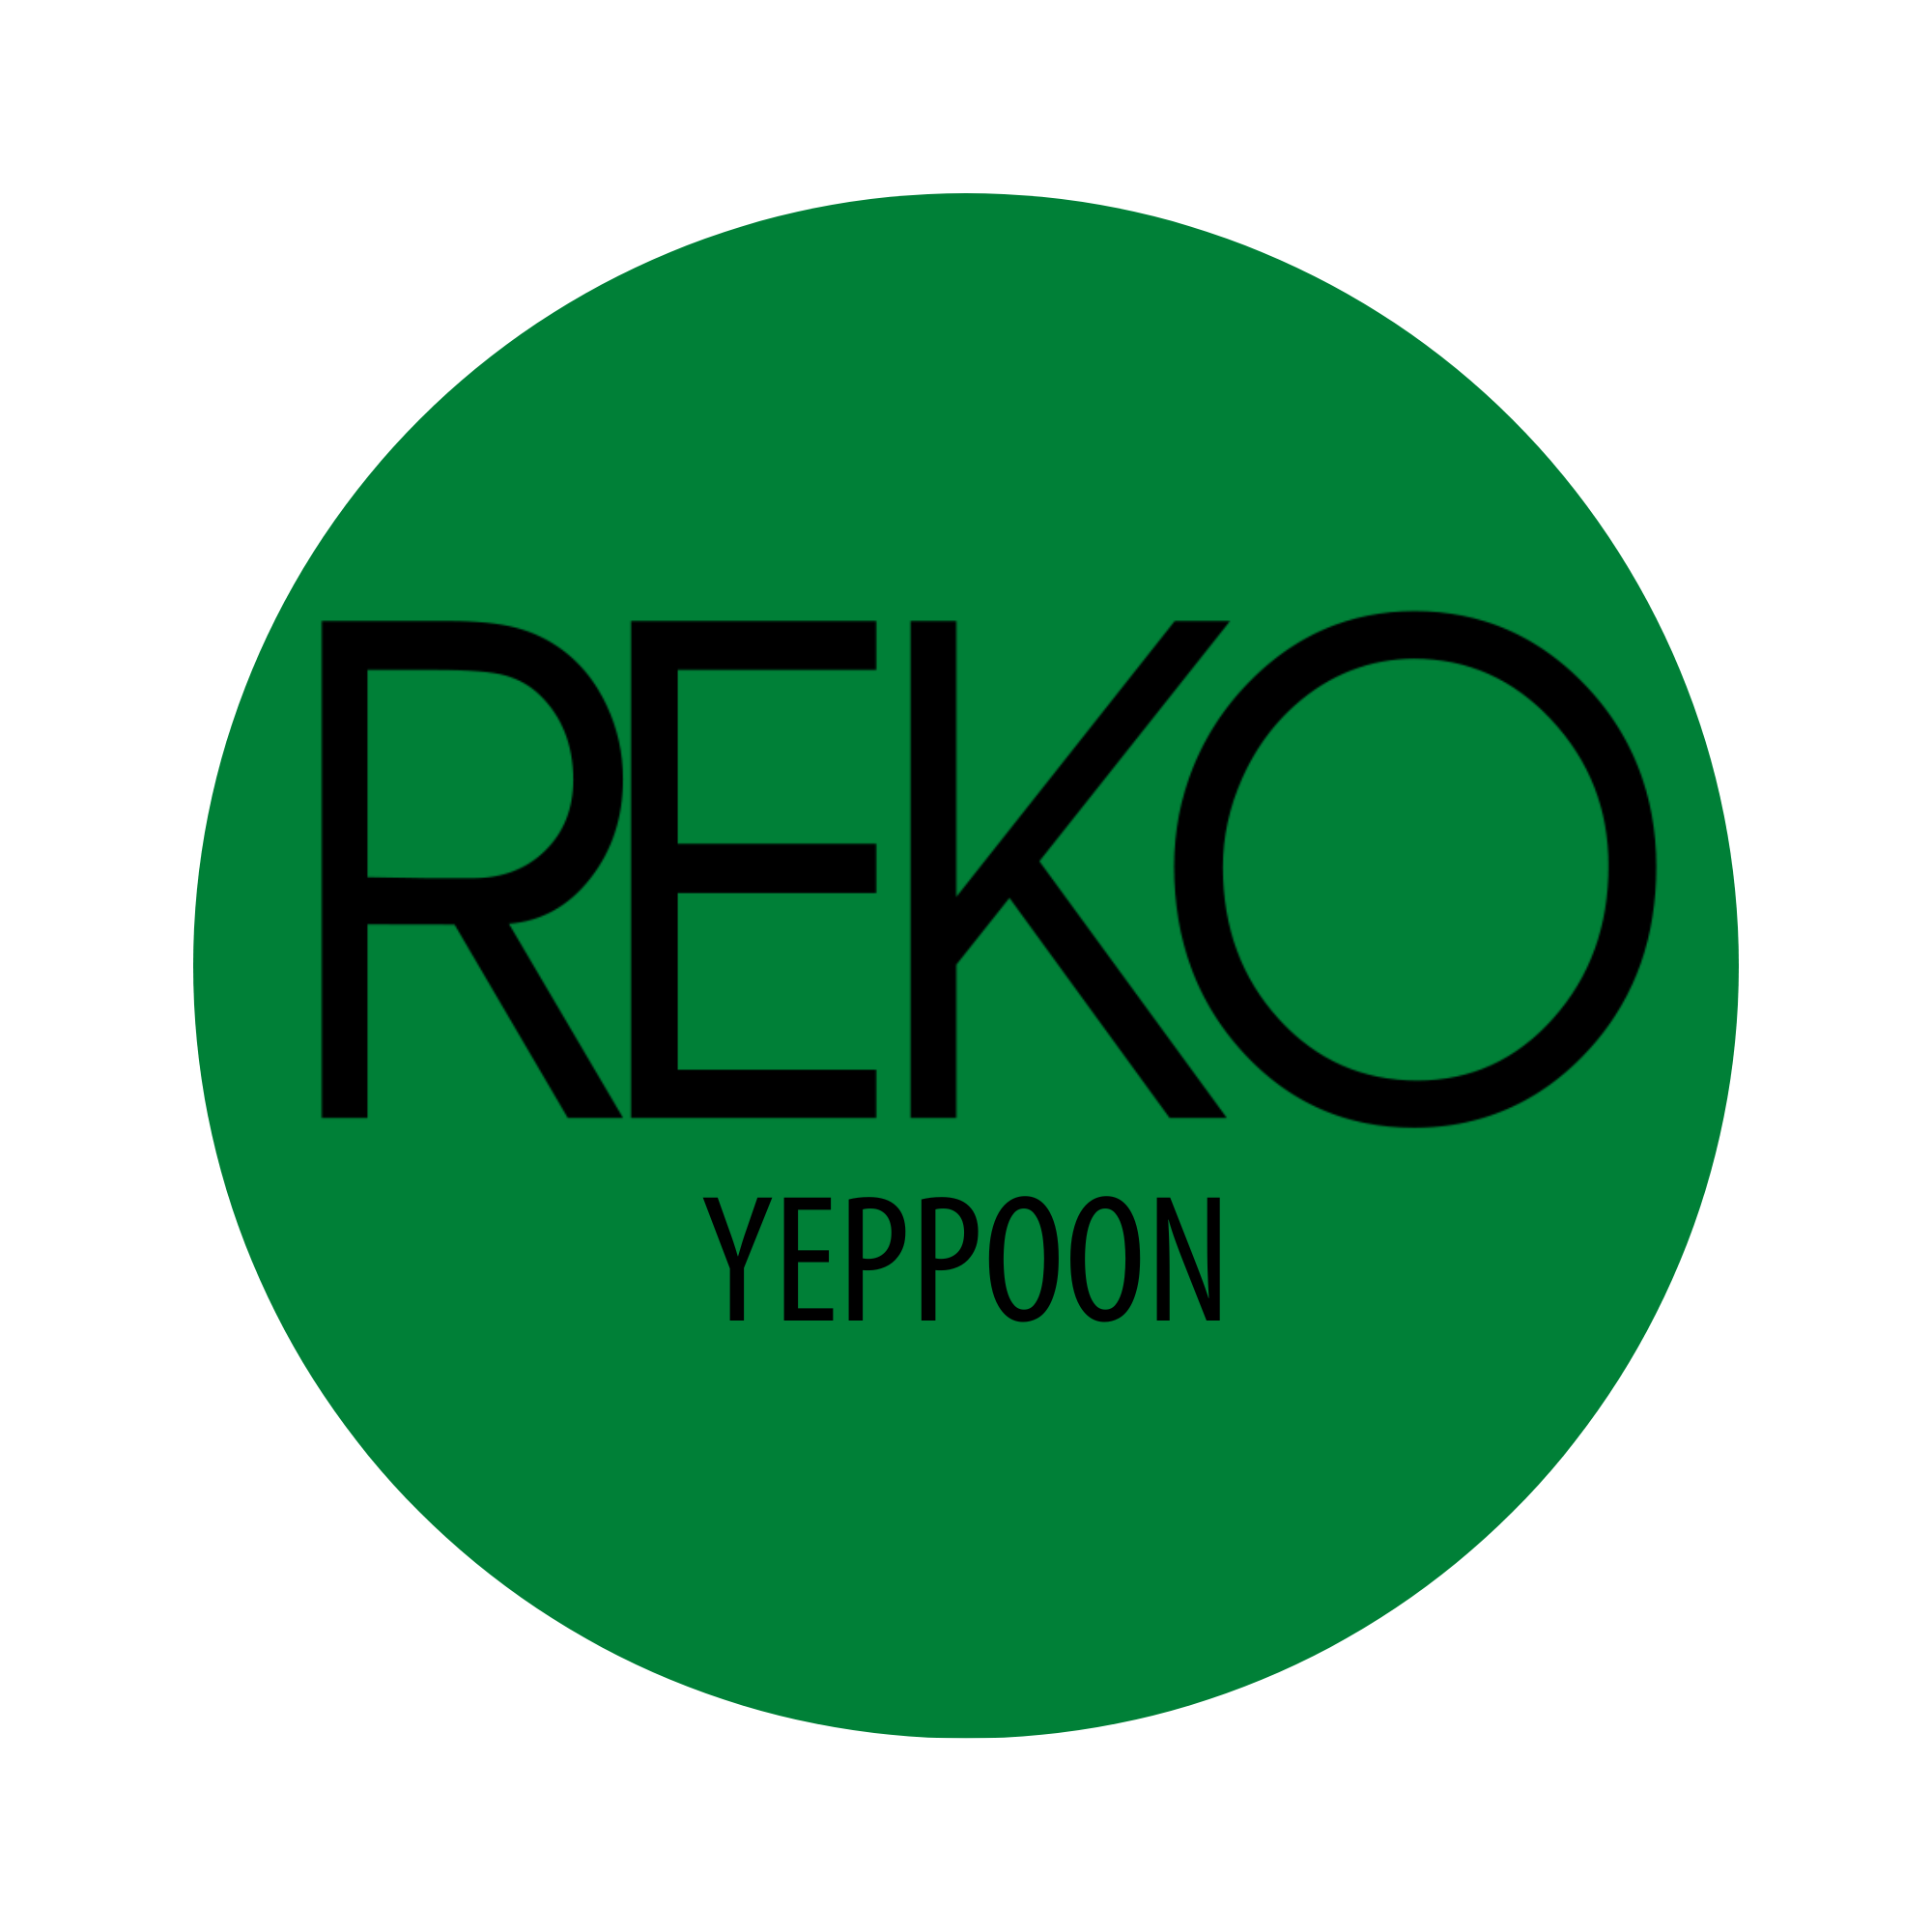 REKO YEPPOON BUTTON.png